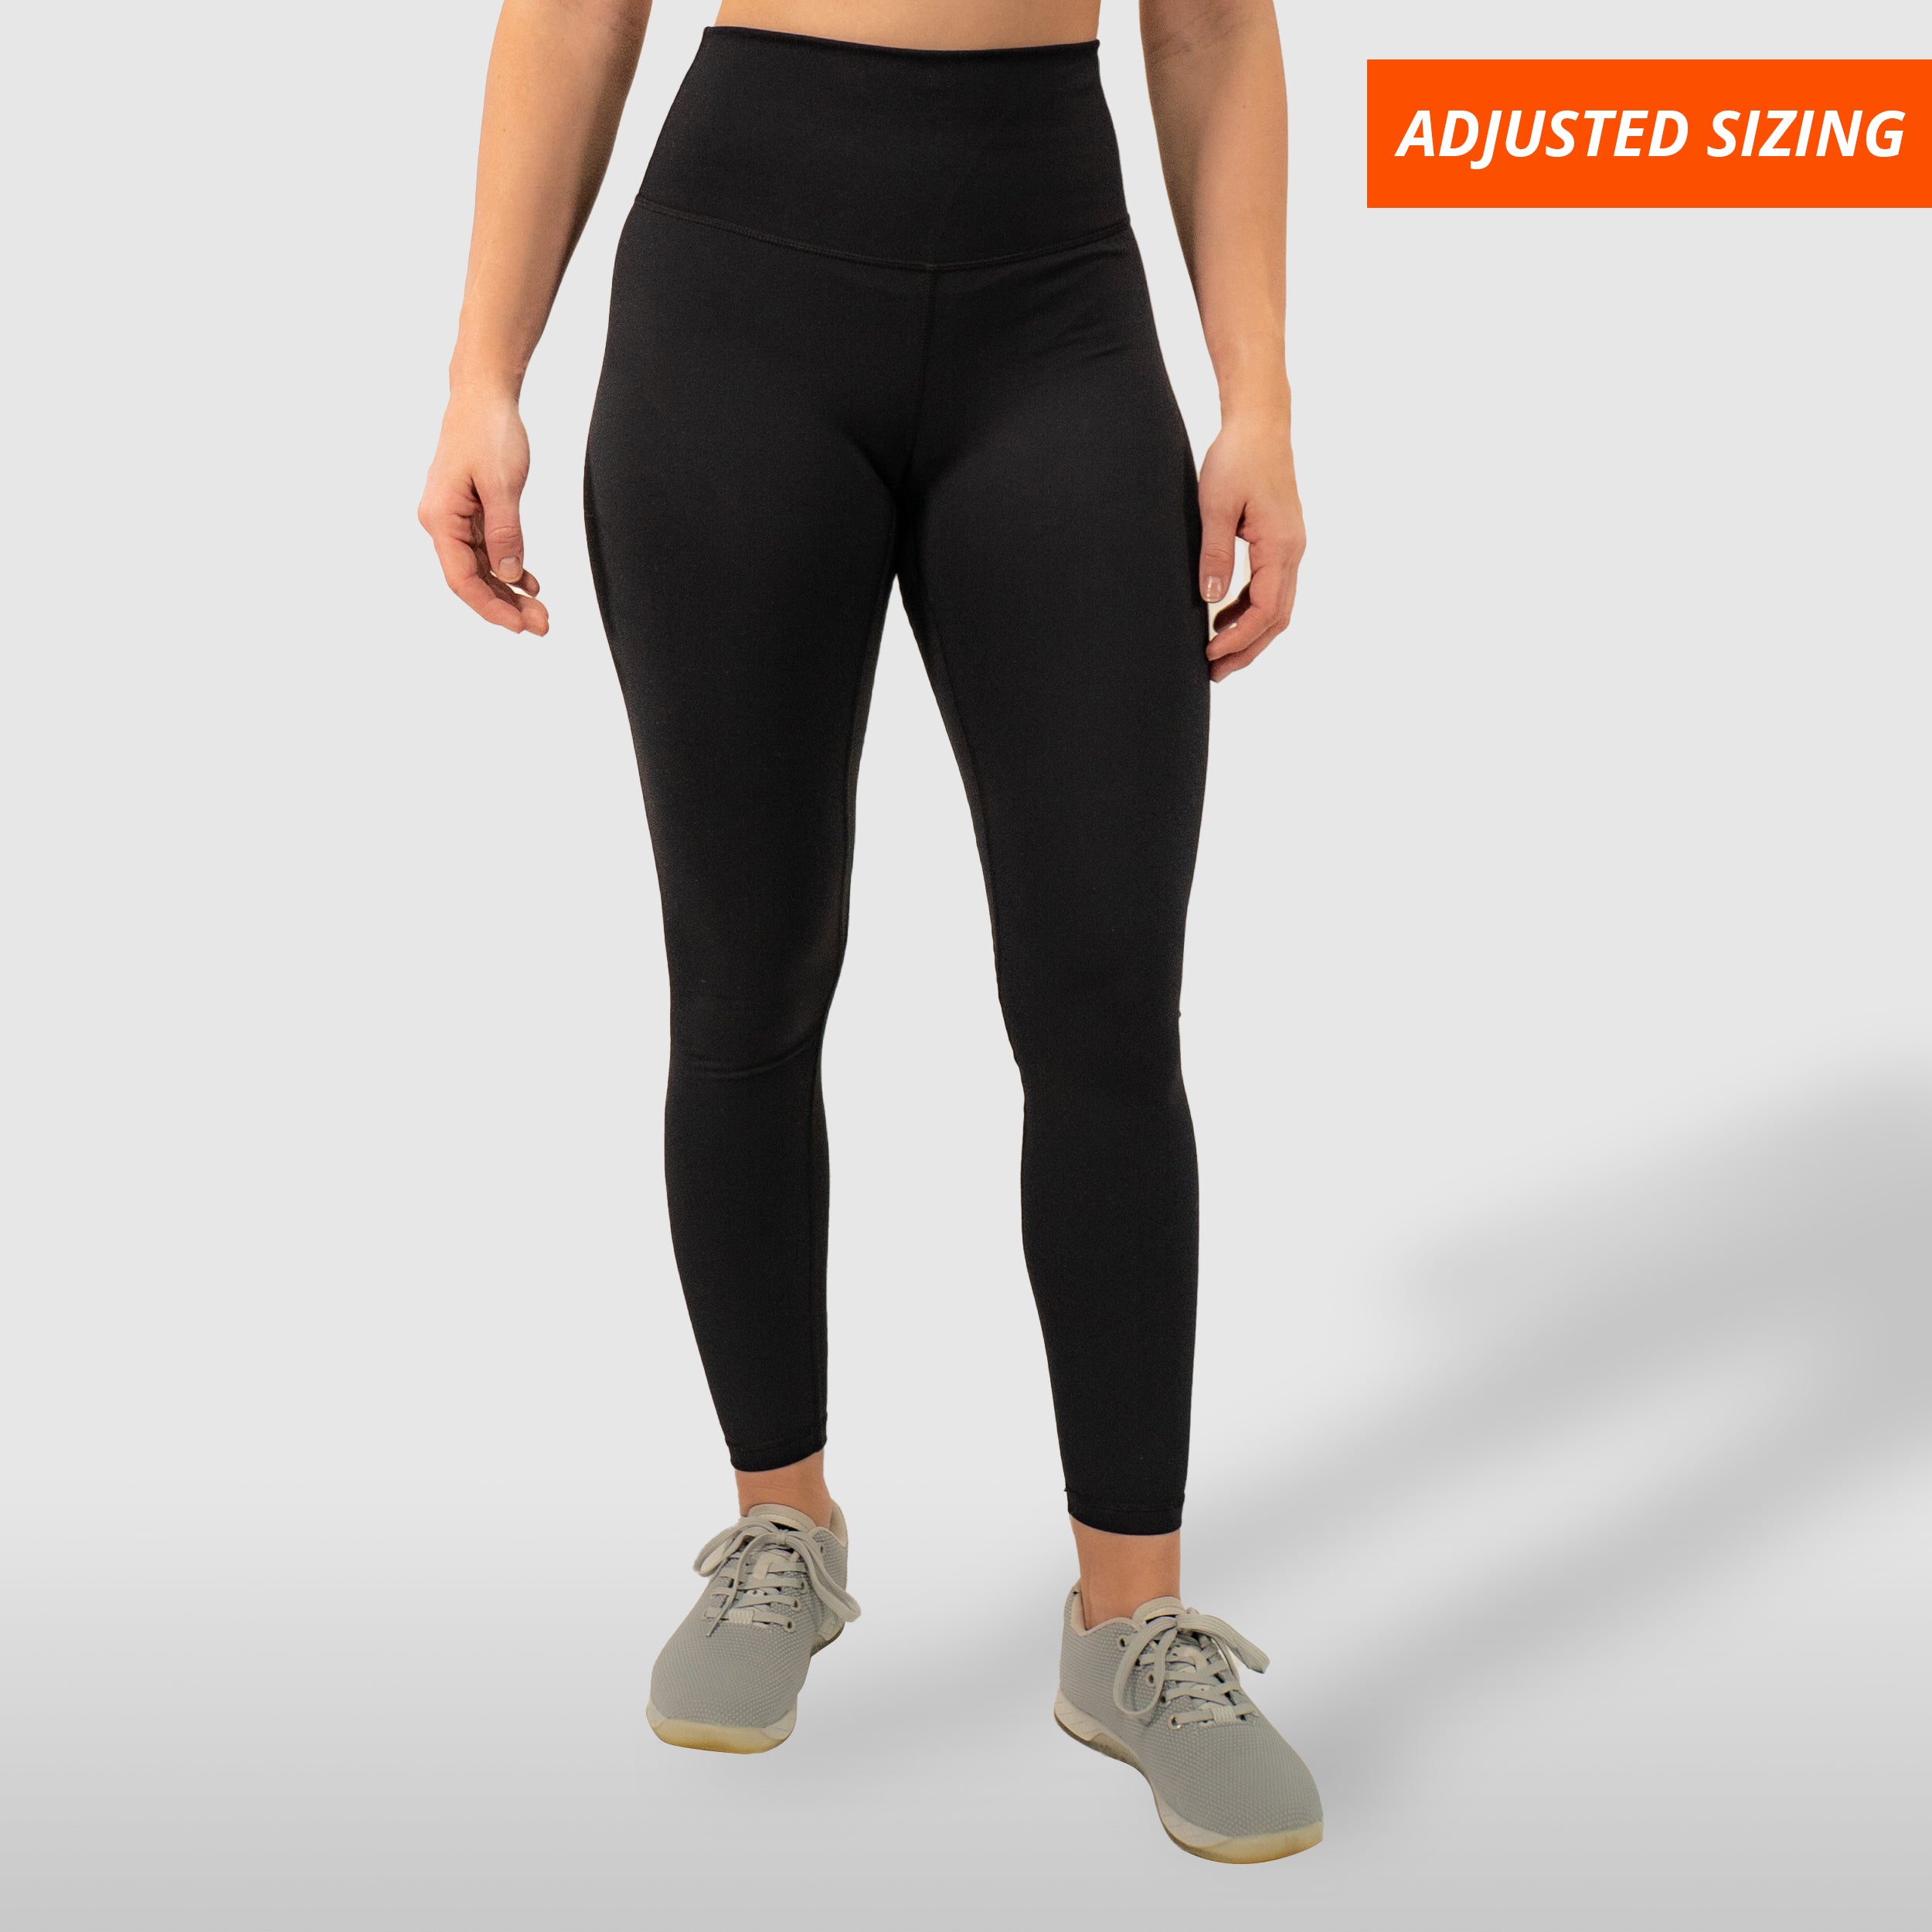 Tight Leggings in Black - The best high performance leggings - Women's  sports – BAMBINE BODY